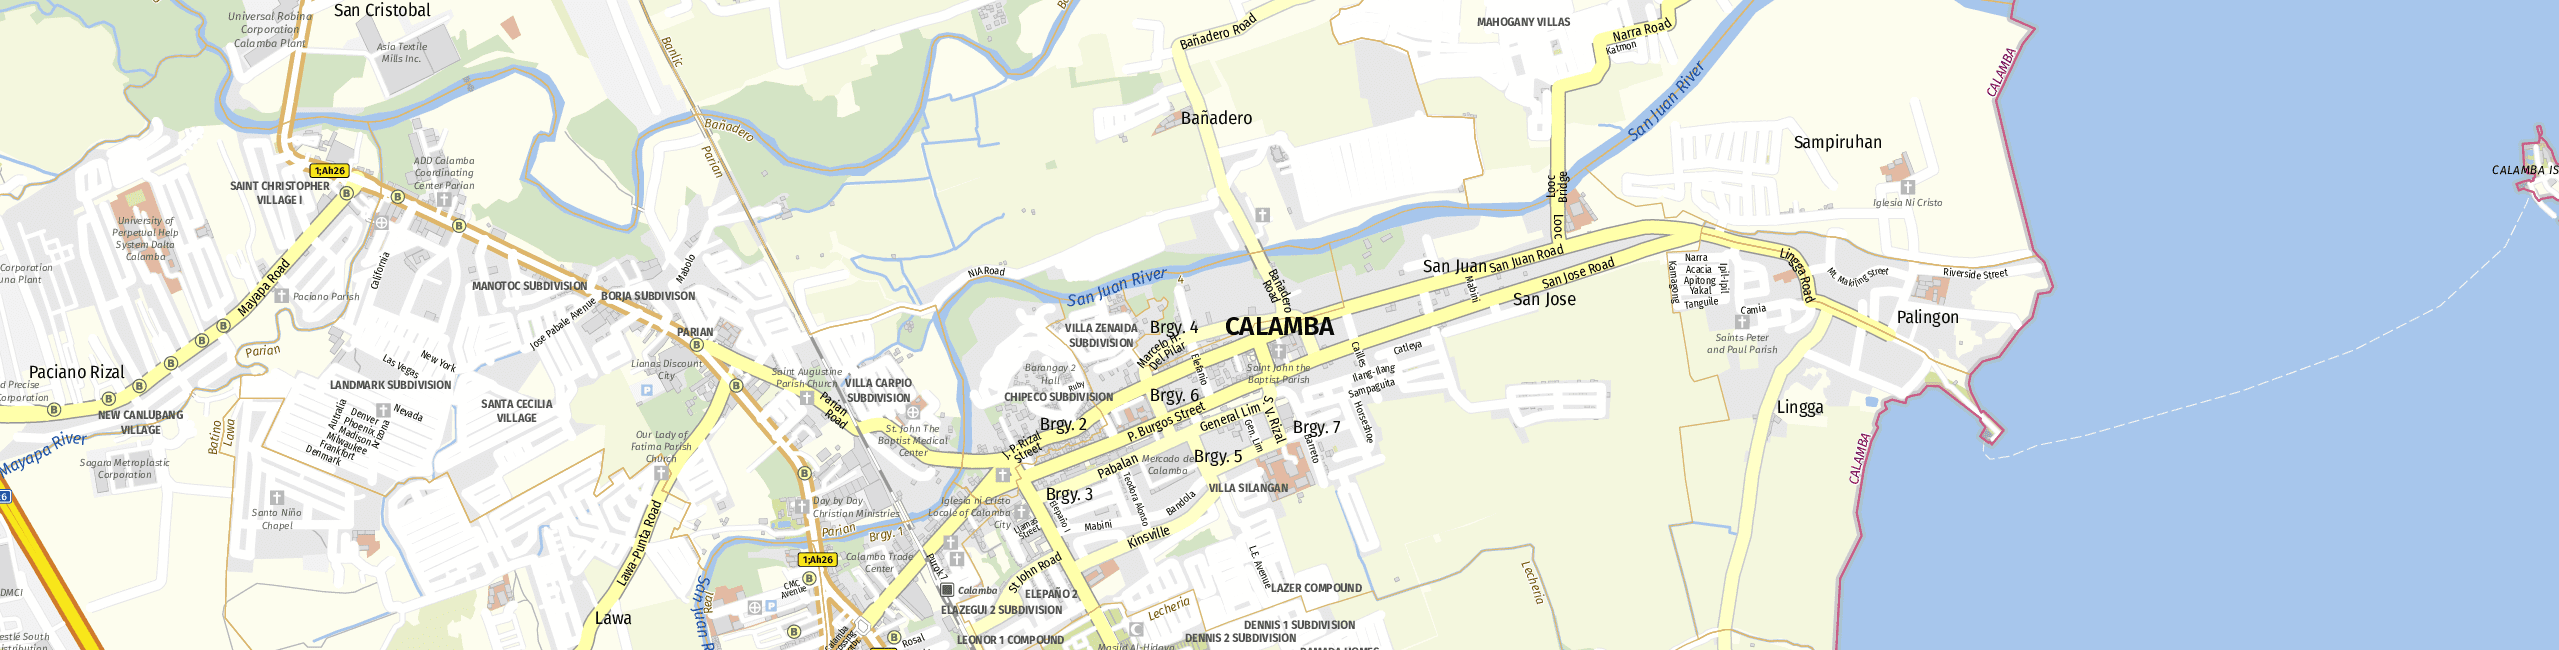 Stadtplan Calamba zum Downloaden.